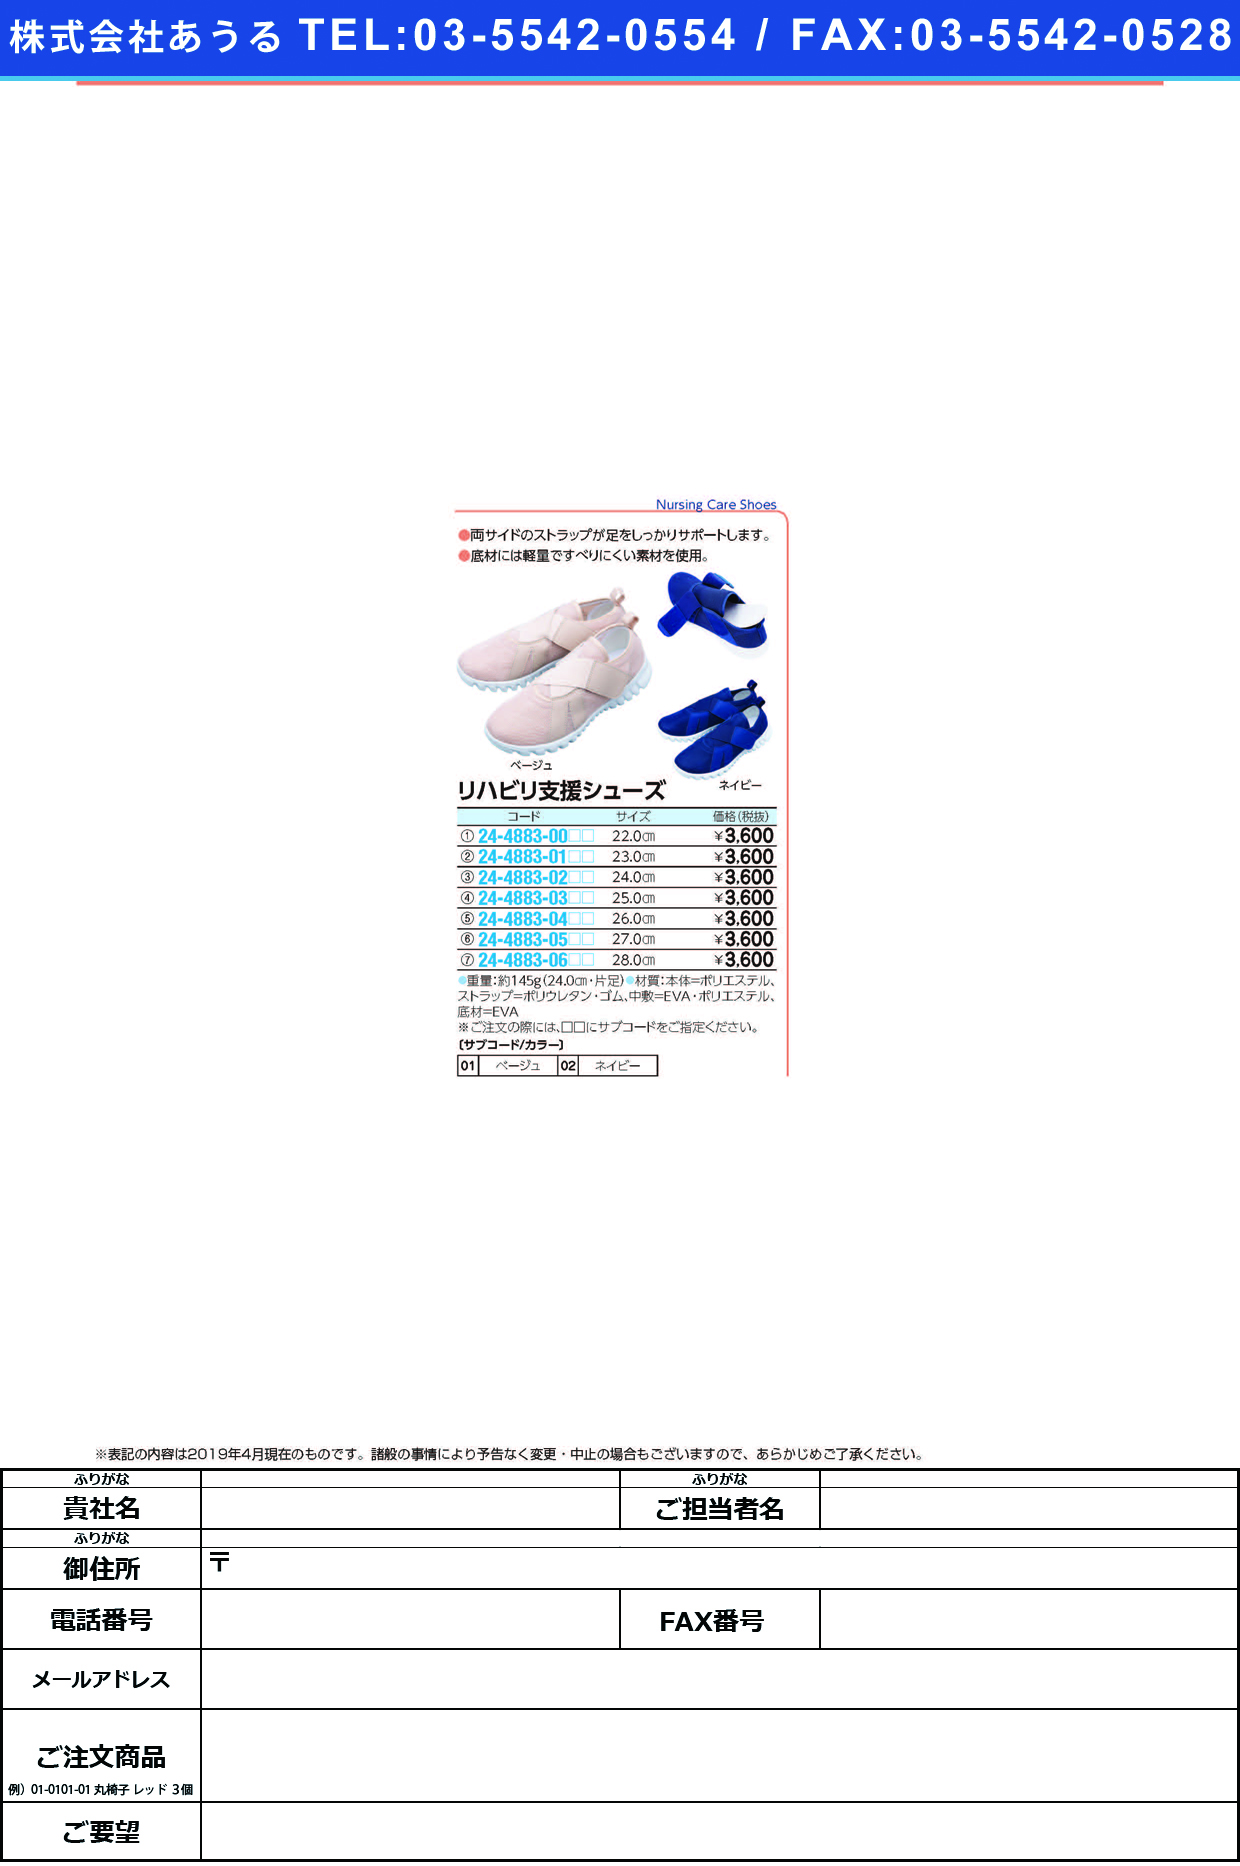 (24-4883-03)リハビリ支援シューズ 25.0CM ﾘﾊﾋﾞﾘｼｴﾝｼｭｰｽﾞ ベージュ【1足単位】【2019年カタログ商品】